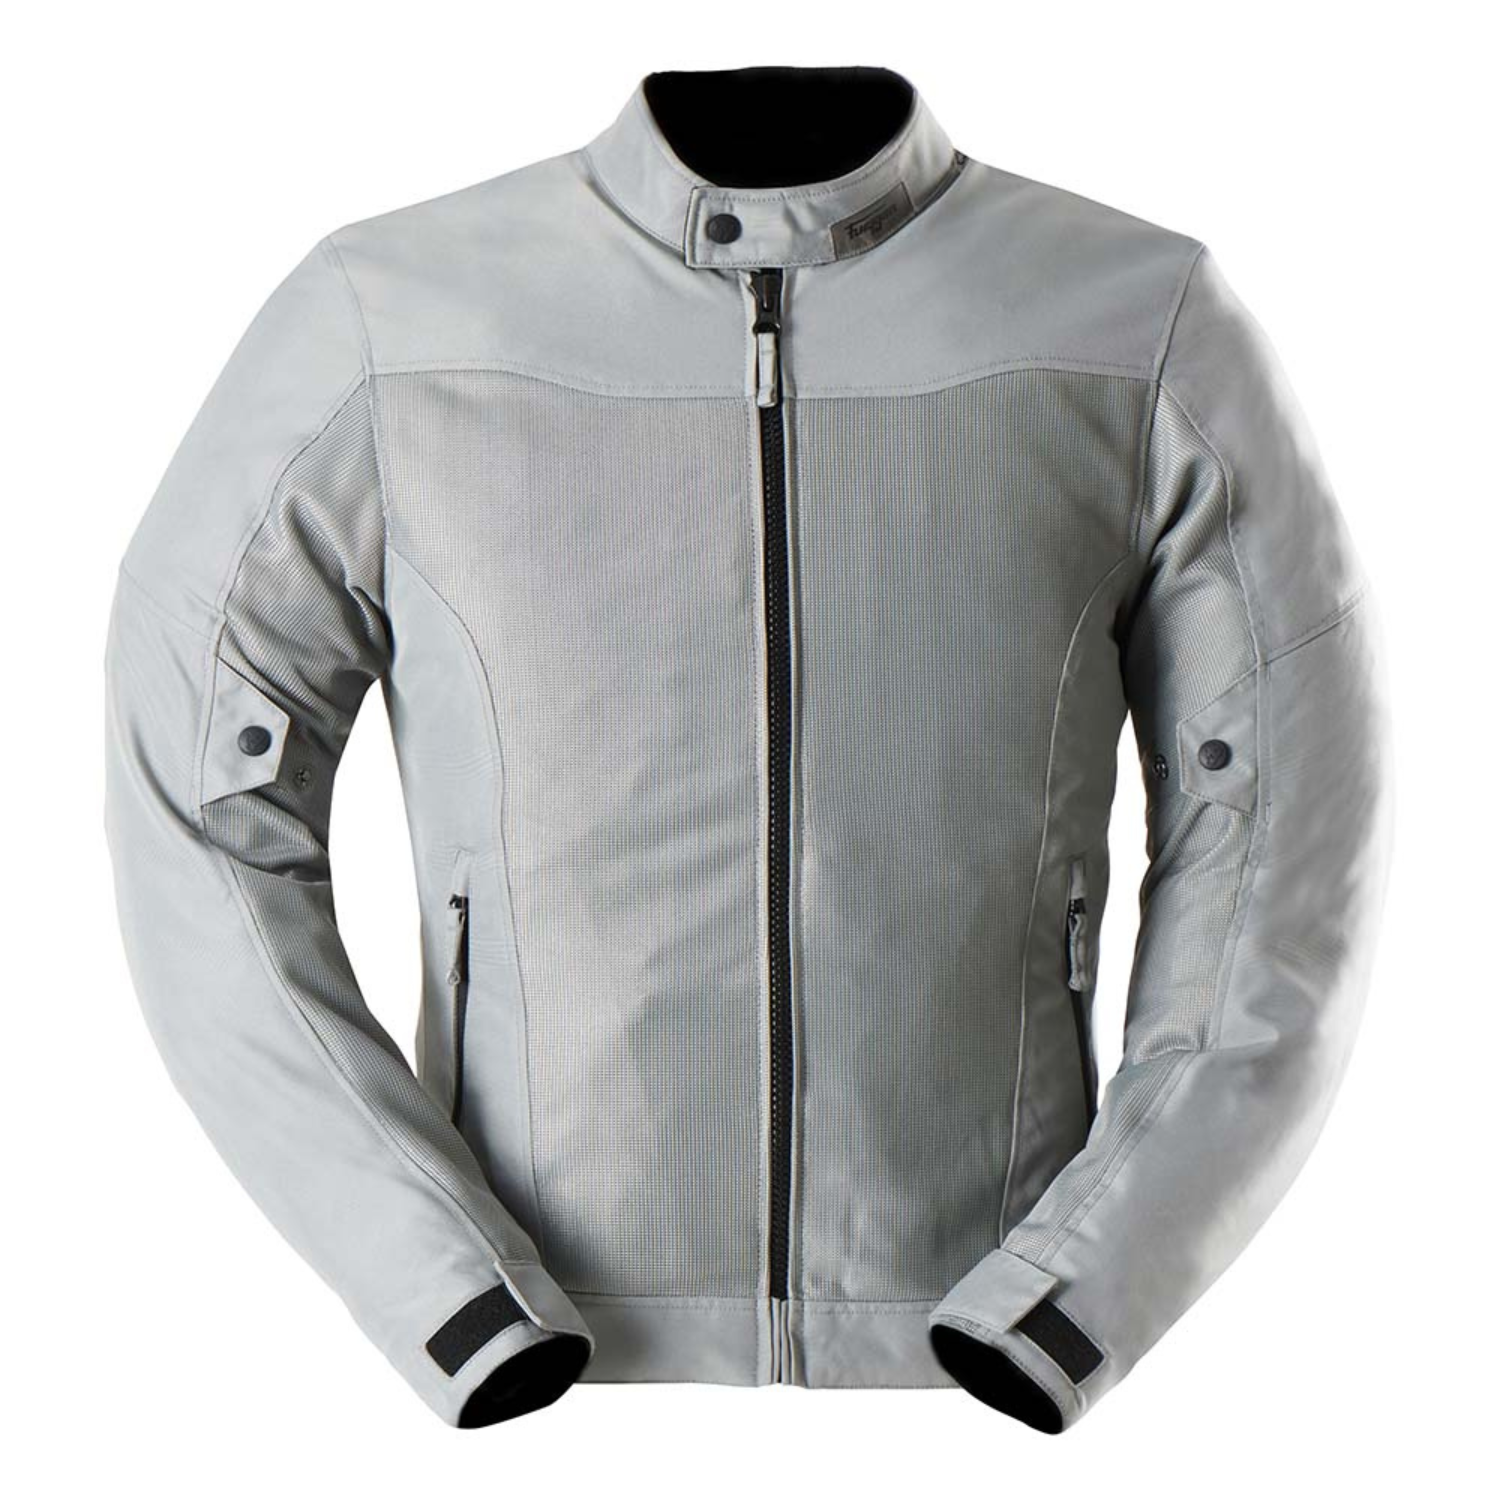 Image of Furygan Mistral Evo 3 Jacket Grey Talla M